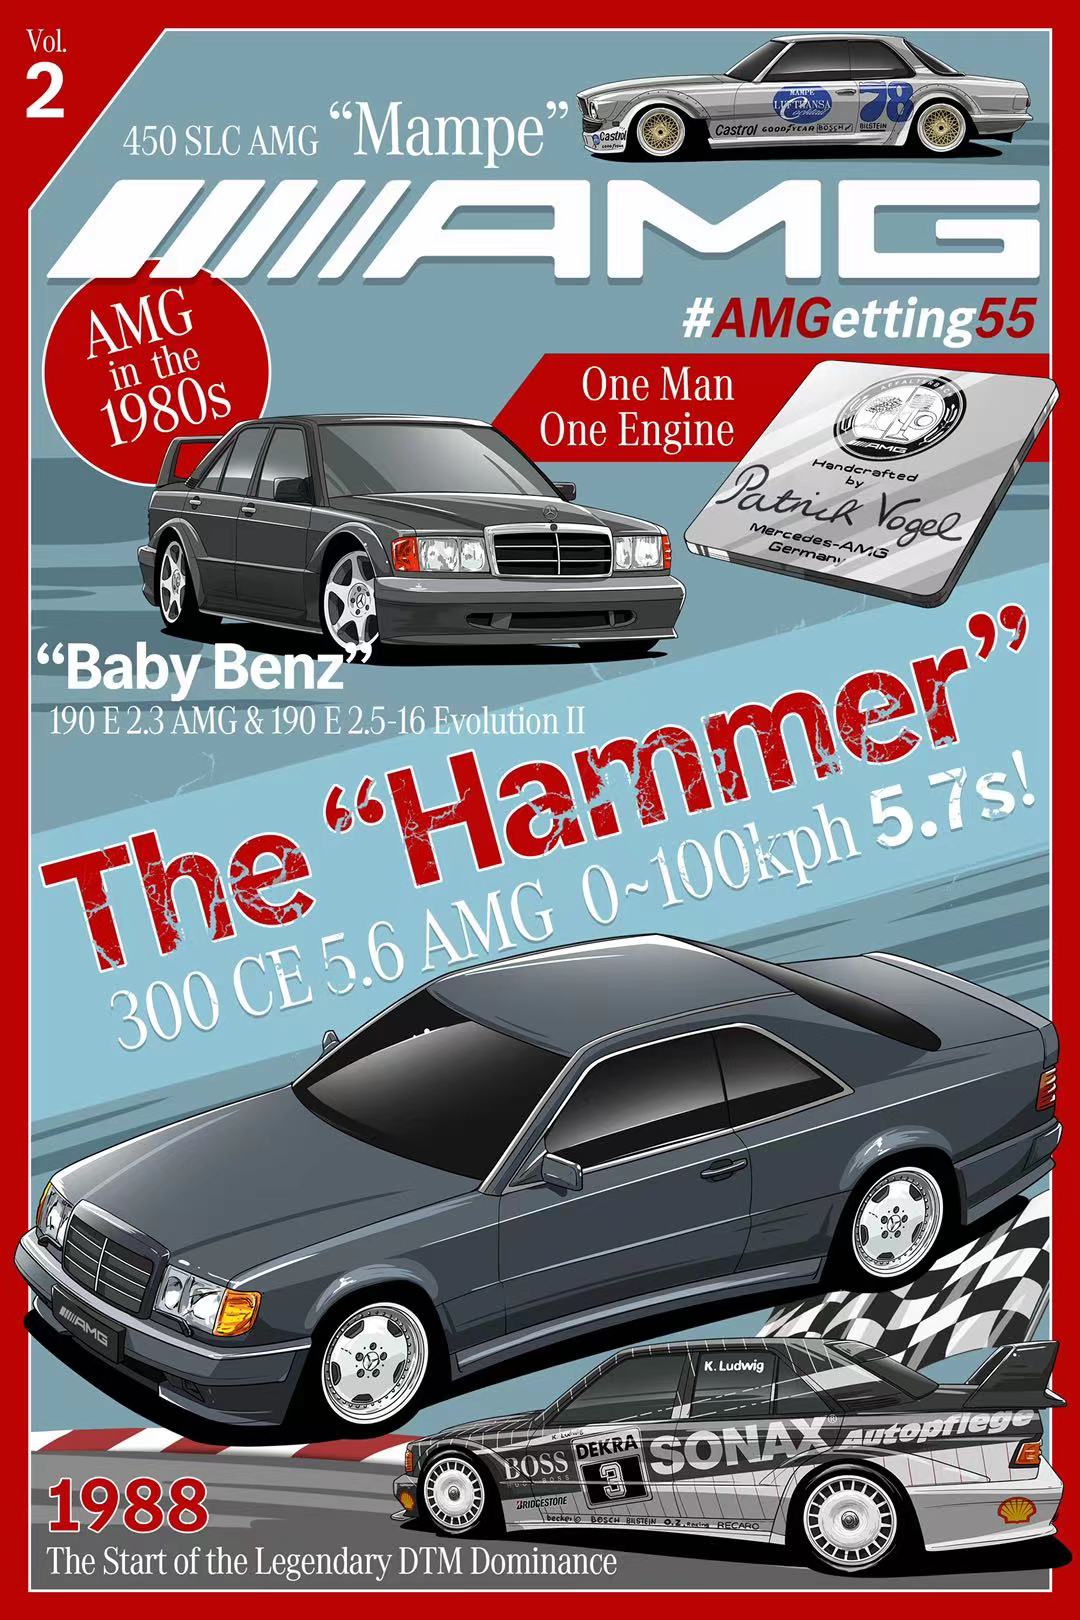 AMG发布55周年海报